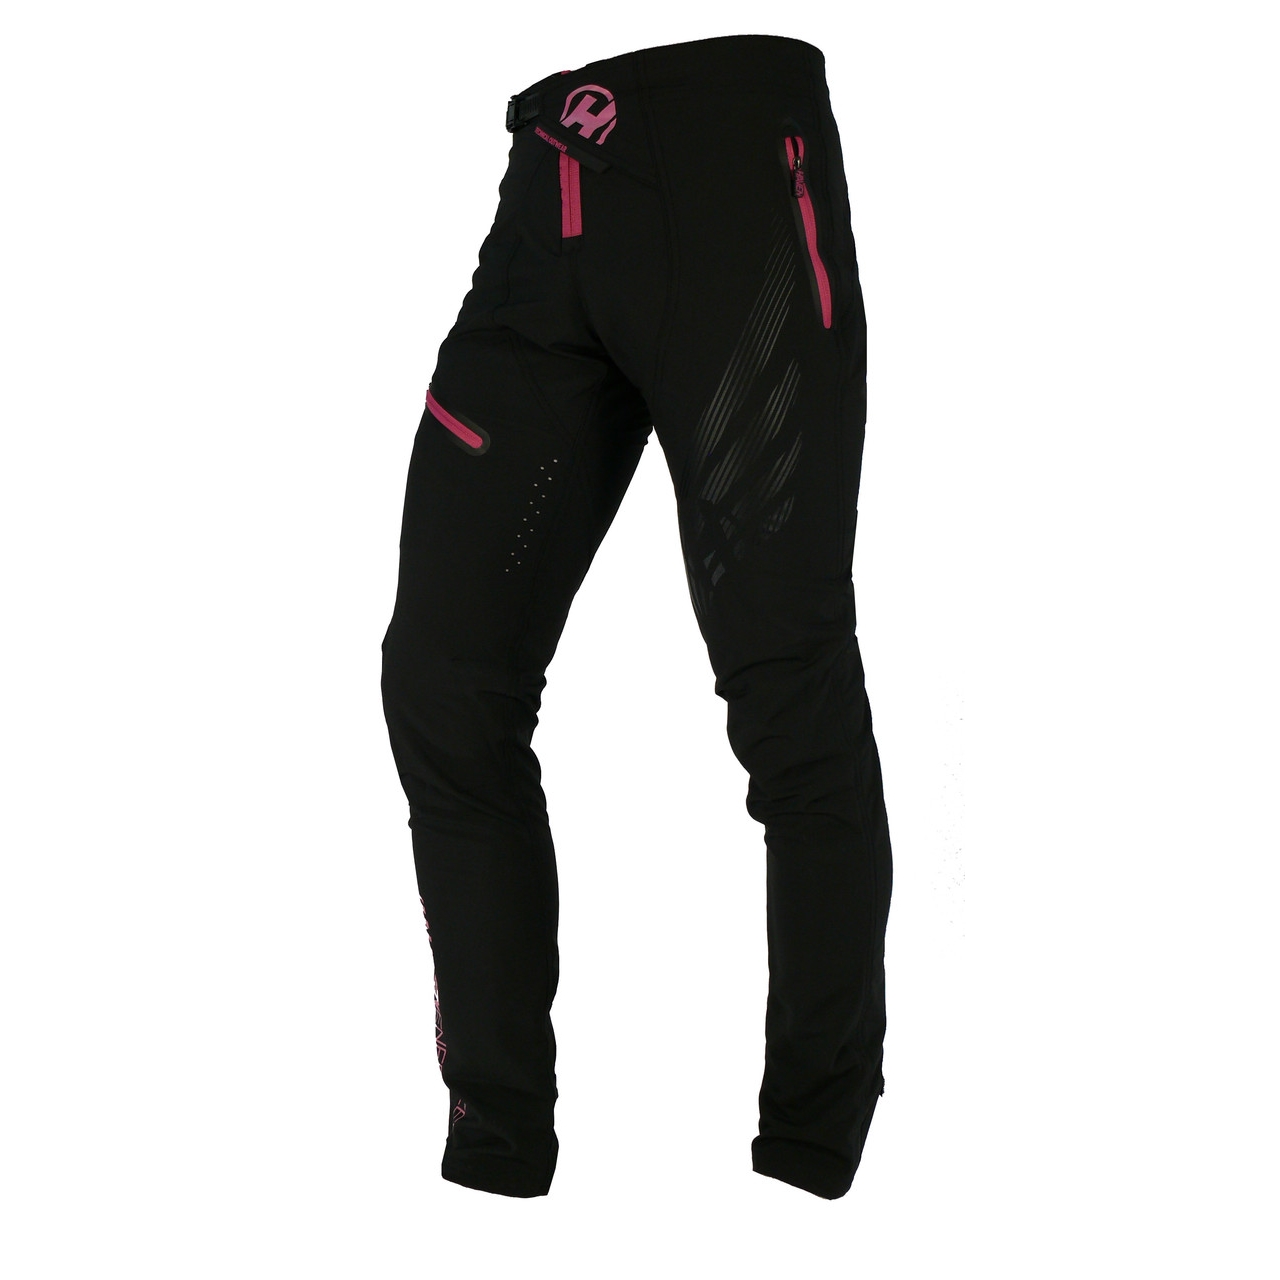 Kalhoty unisex Haven Energizer - černé-růžové, XS